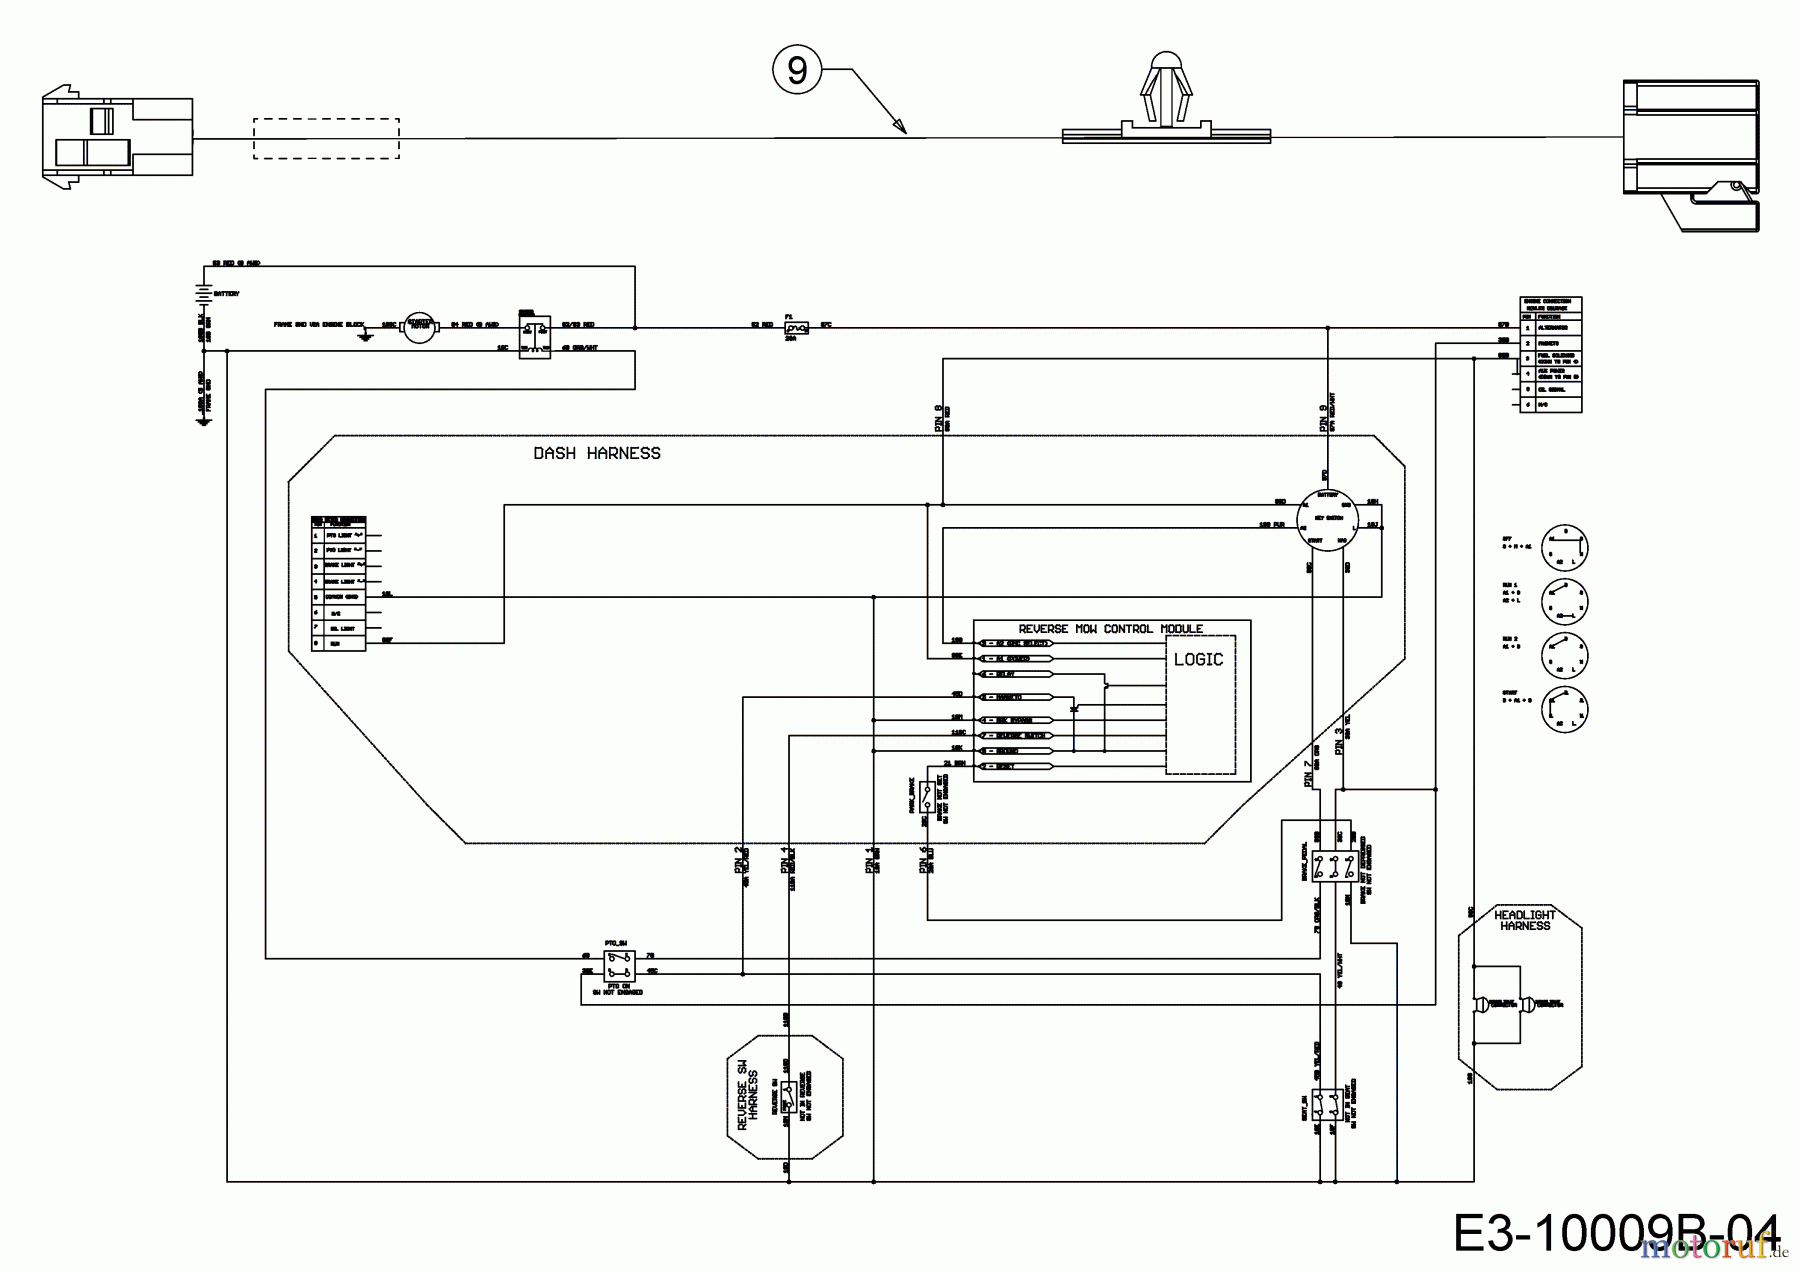  Cub Cadet Lawn tractors XT1 OS107 13A8A1CS603  (2018) Wiring diagram reverse